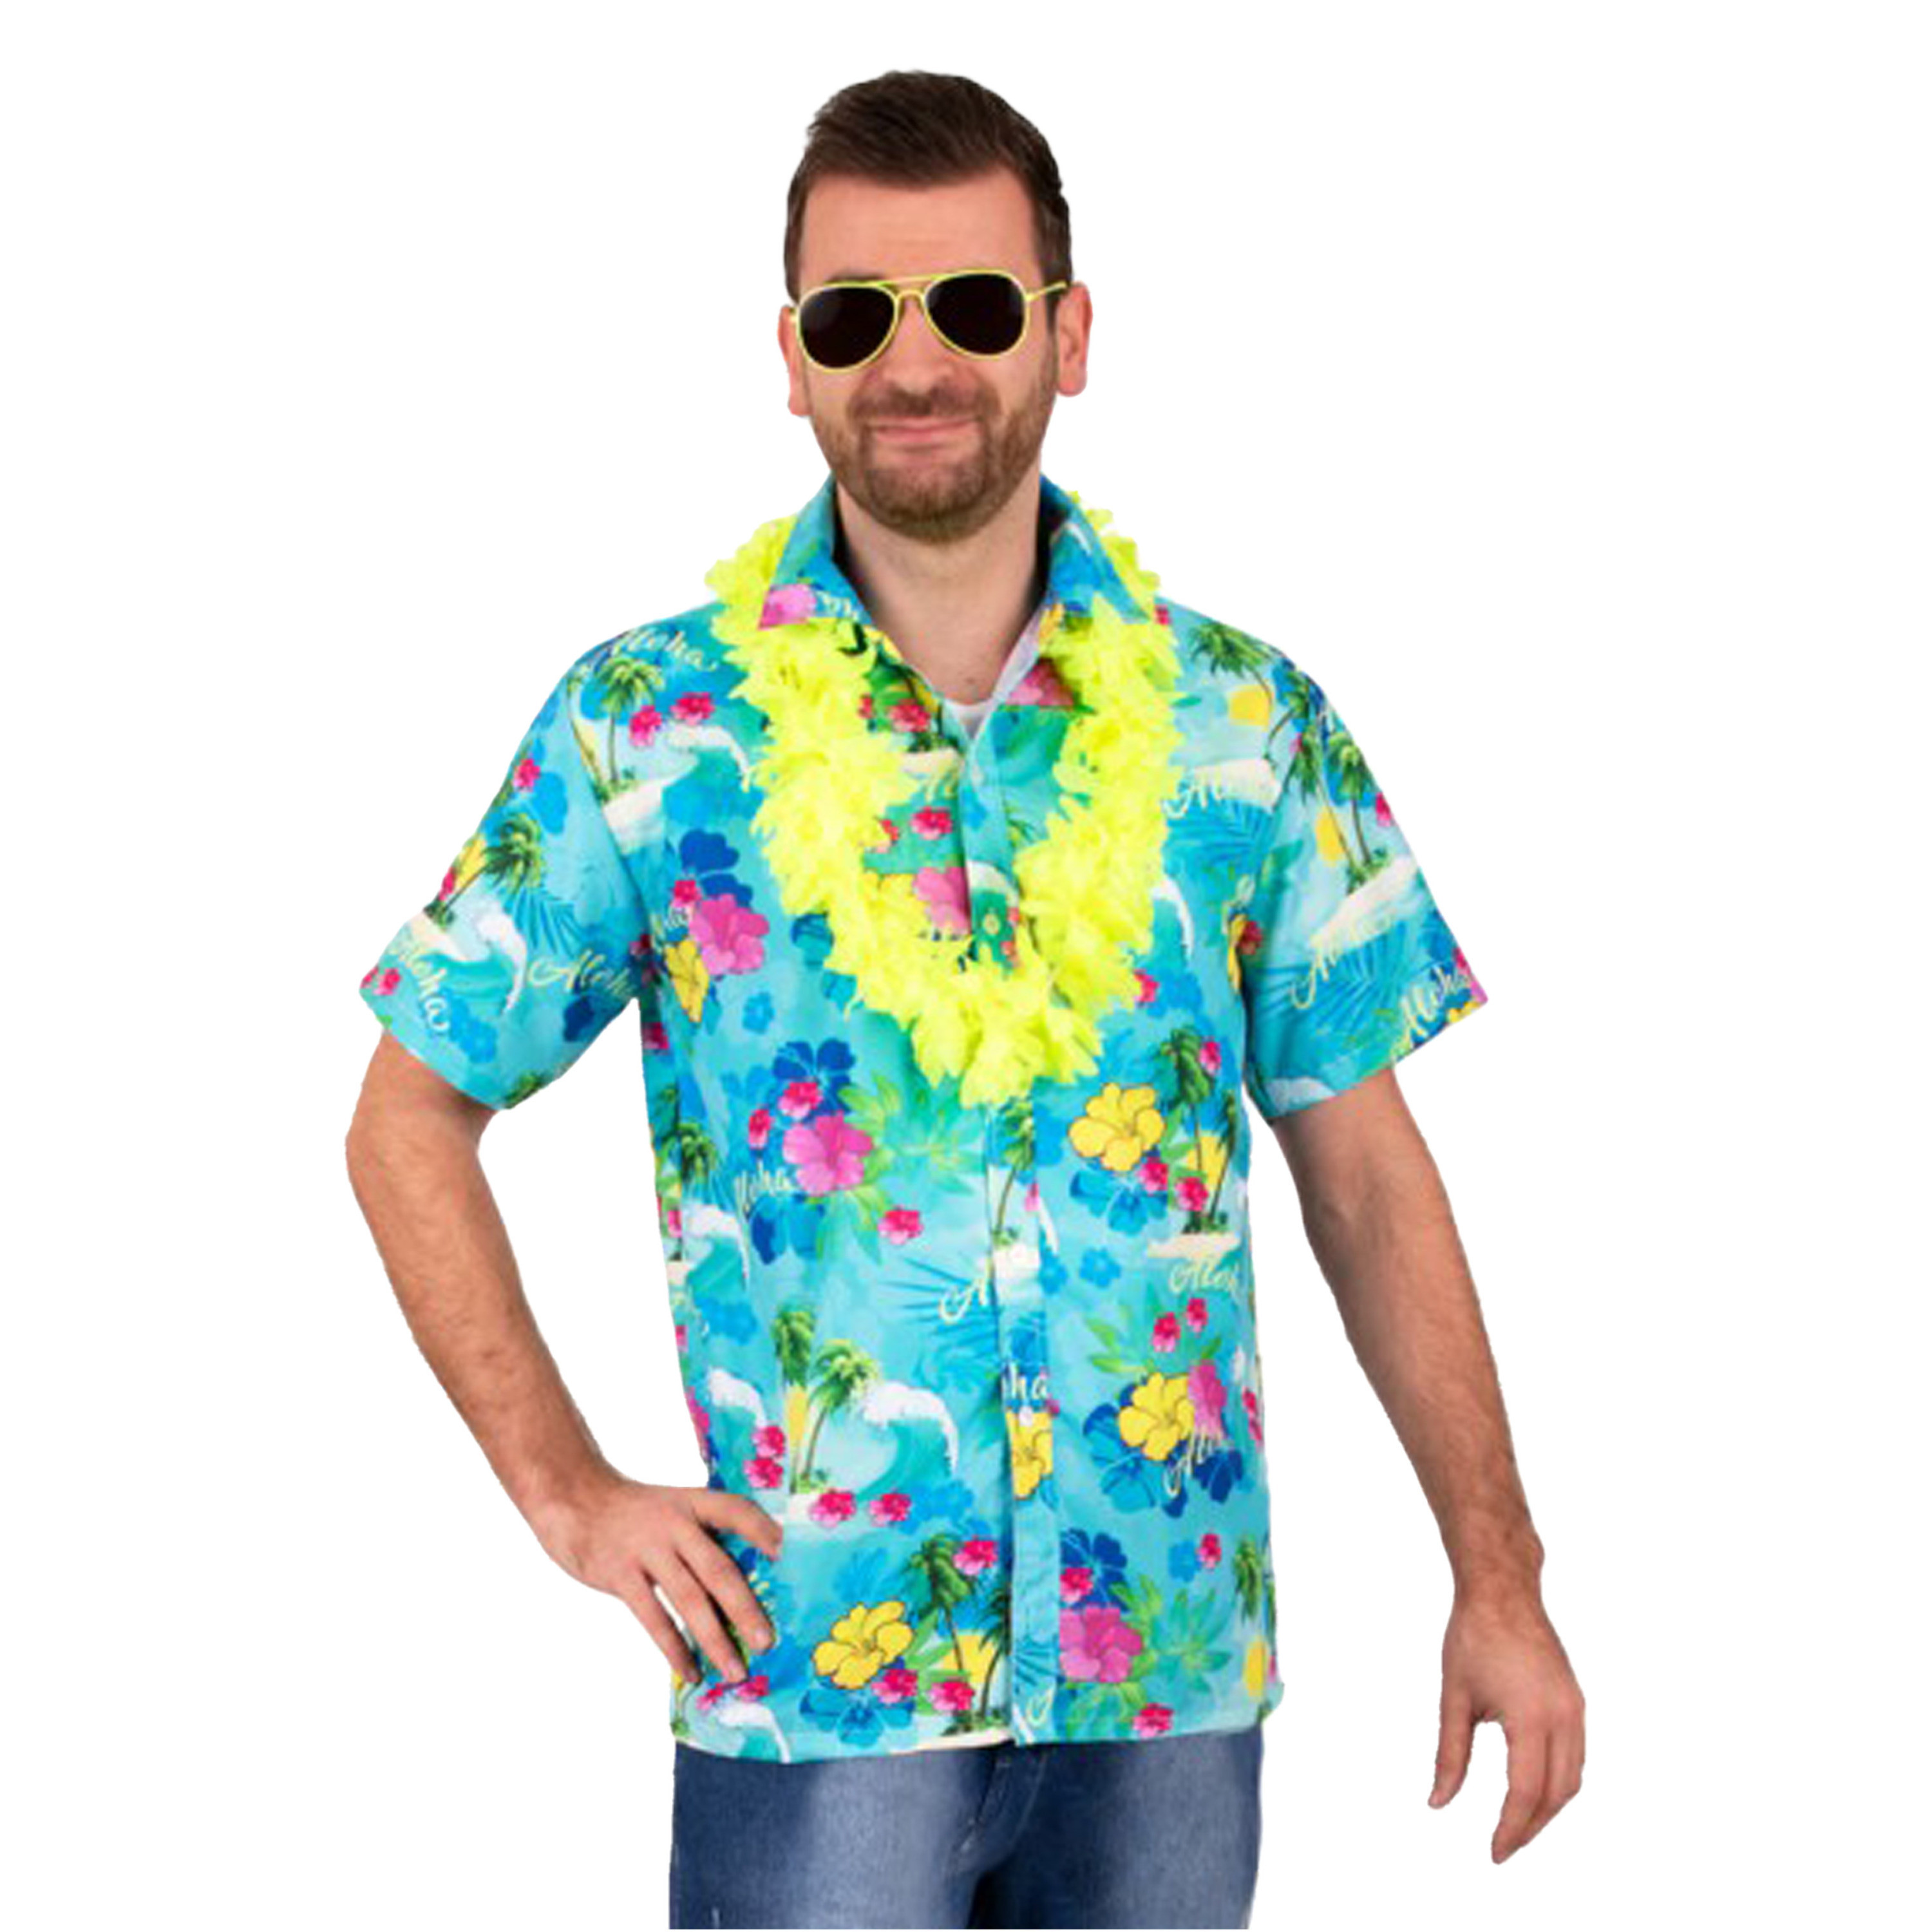 Toppers - Hawaii shirt/blouse - Verkleedkleding - Heren - Tropische bloemen - blauw